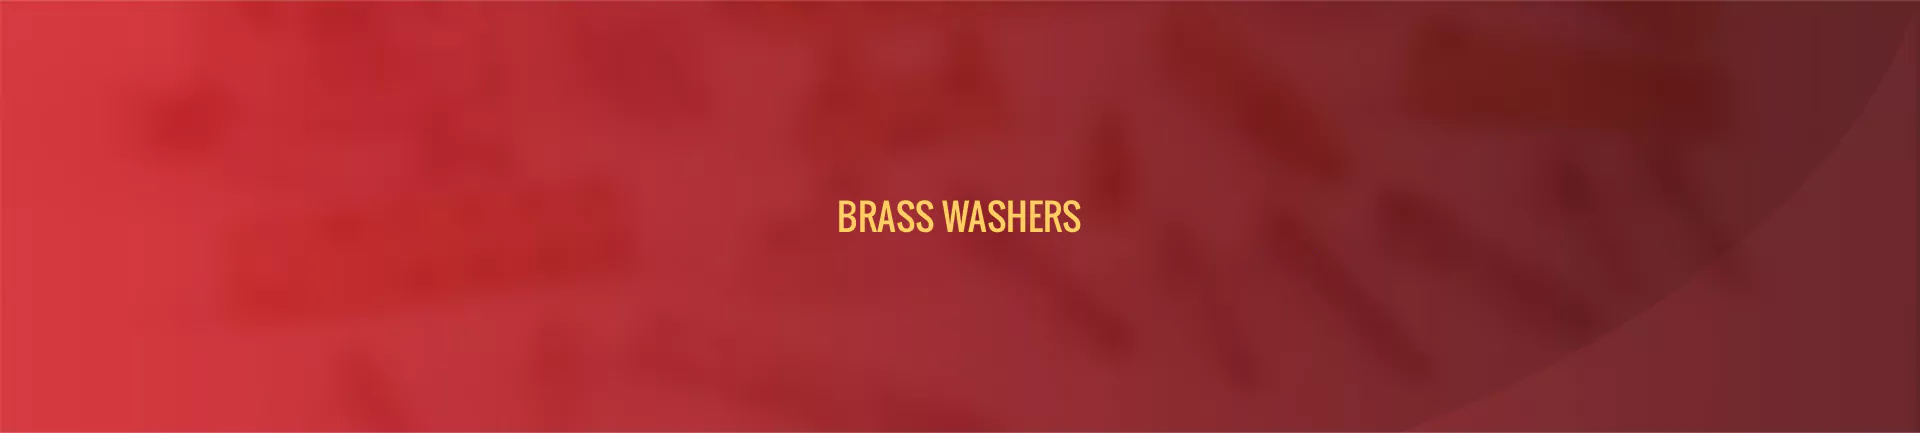 brass-washer-banner